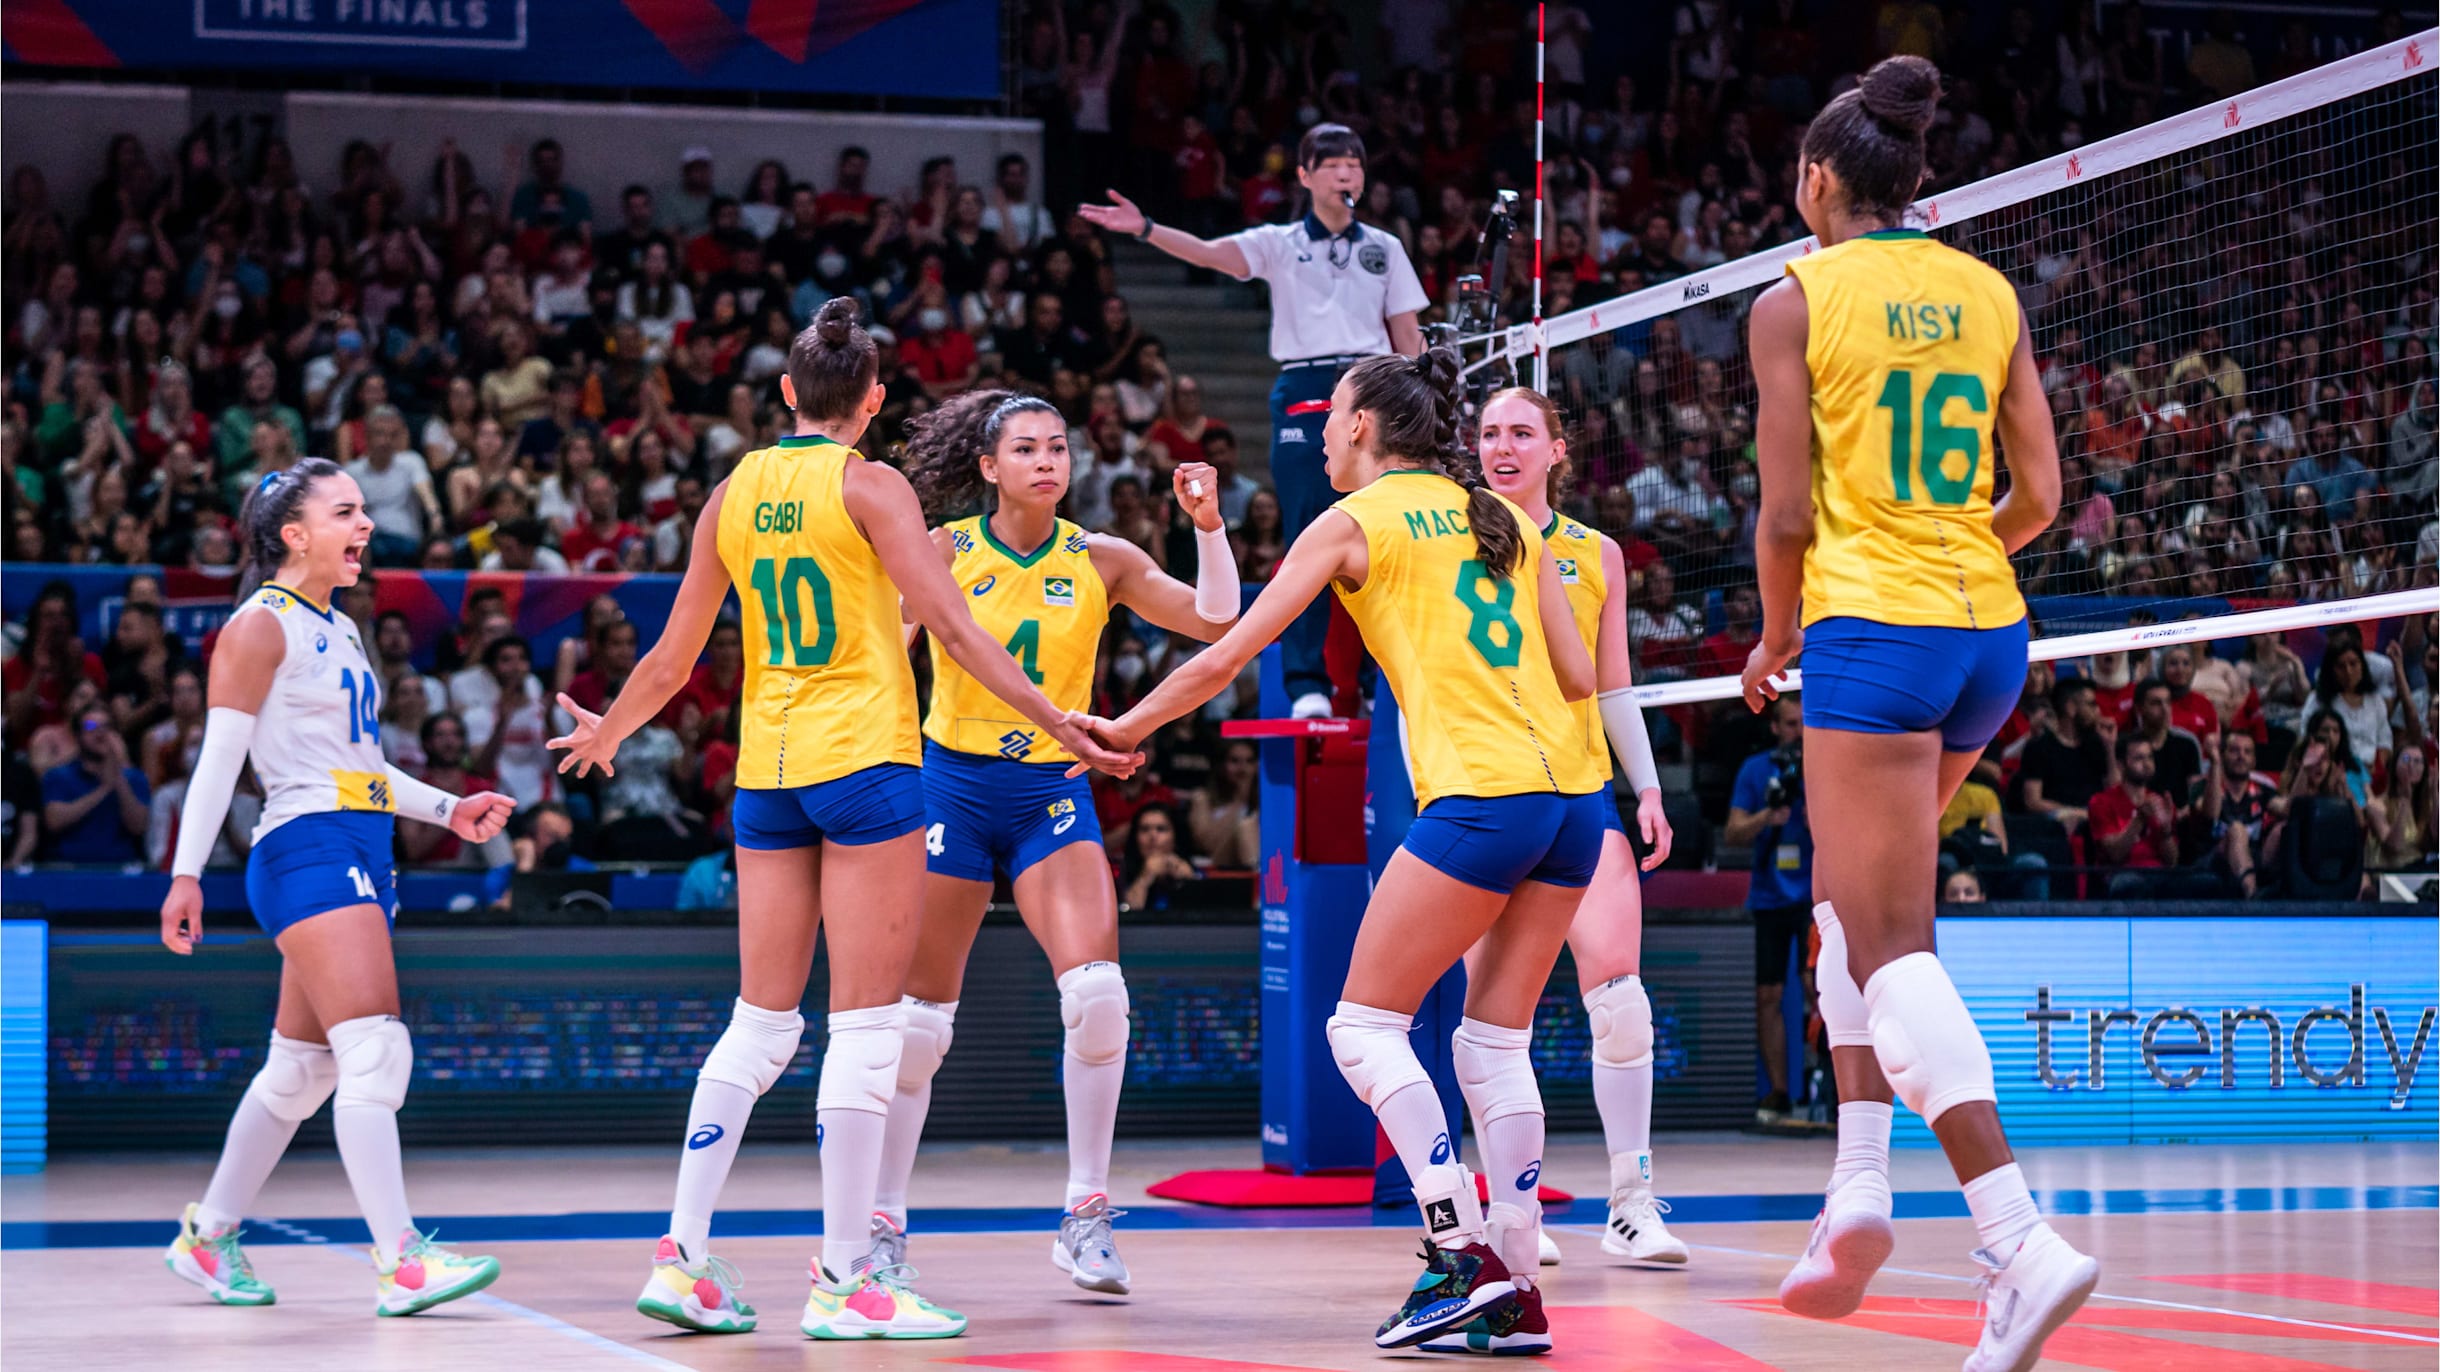 MUNDIAL DE VÔLEI FEMININO 2022: conheça os grupos do campeonato e veja quem  são as adversárias do BRASIL